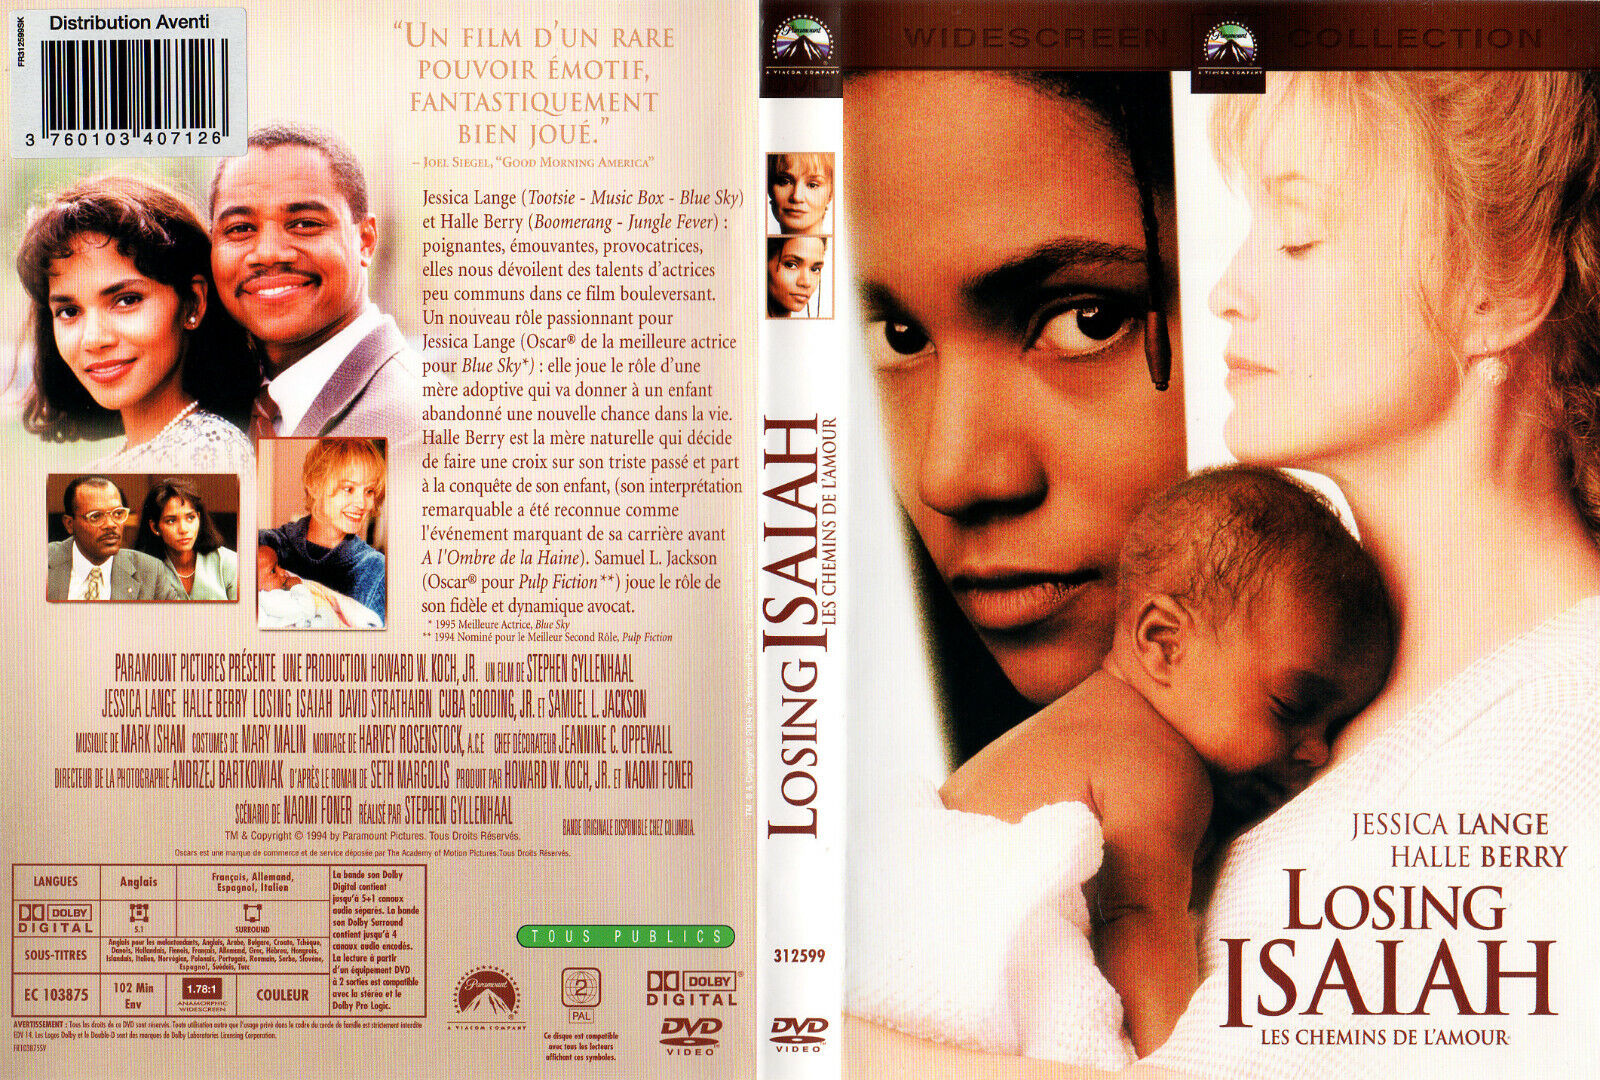 Jaquette DVD Losing Isaiah - les chemins de l